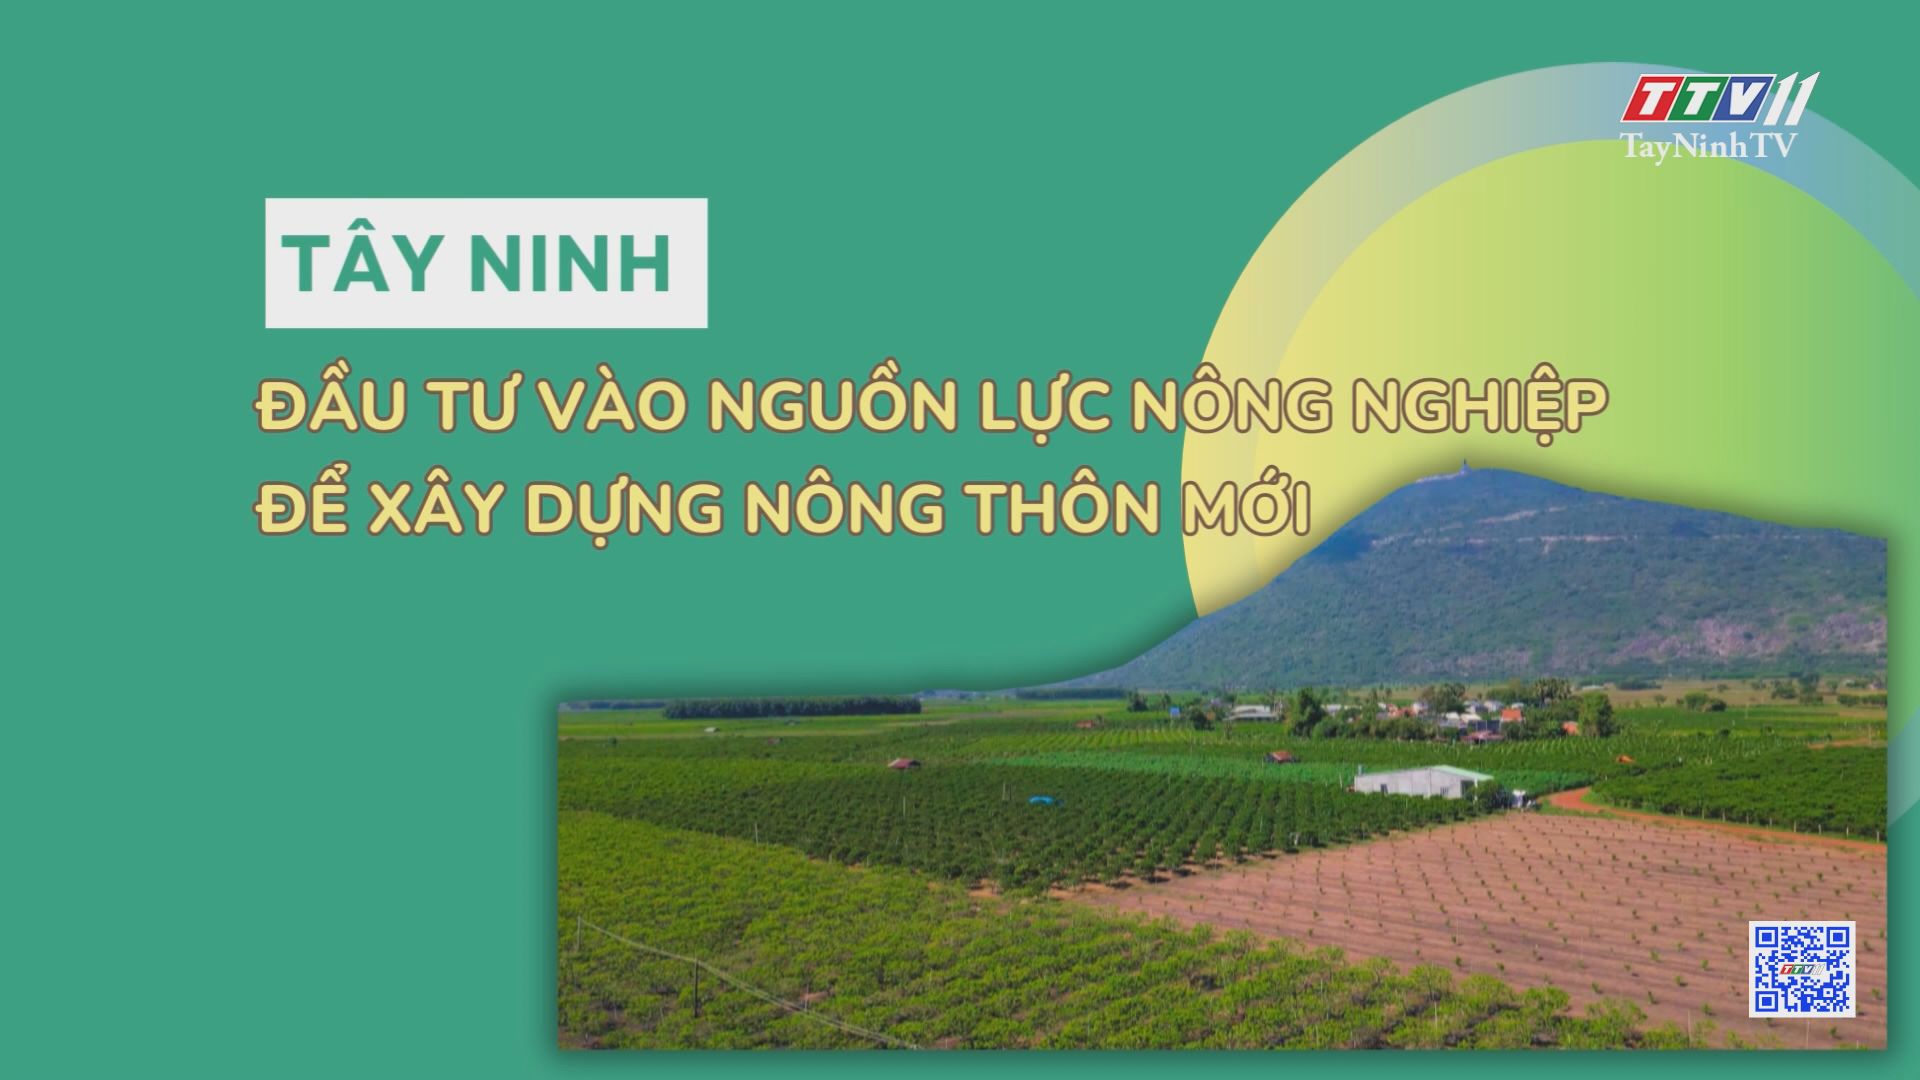 Tây Ninh đầu tư vào nguồn lực nông nghiệp để xây dựng nông thôn mới | TayNinhTV